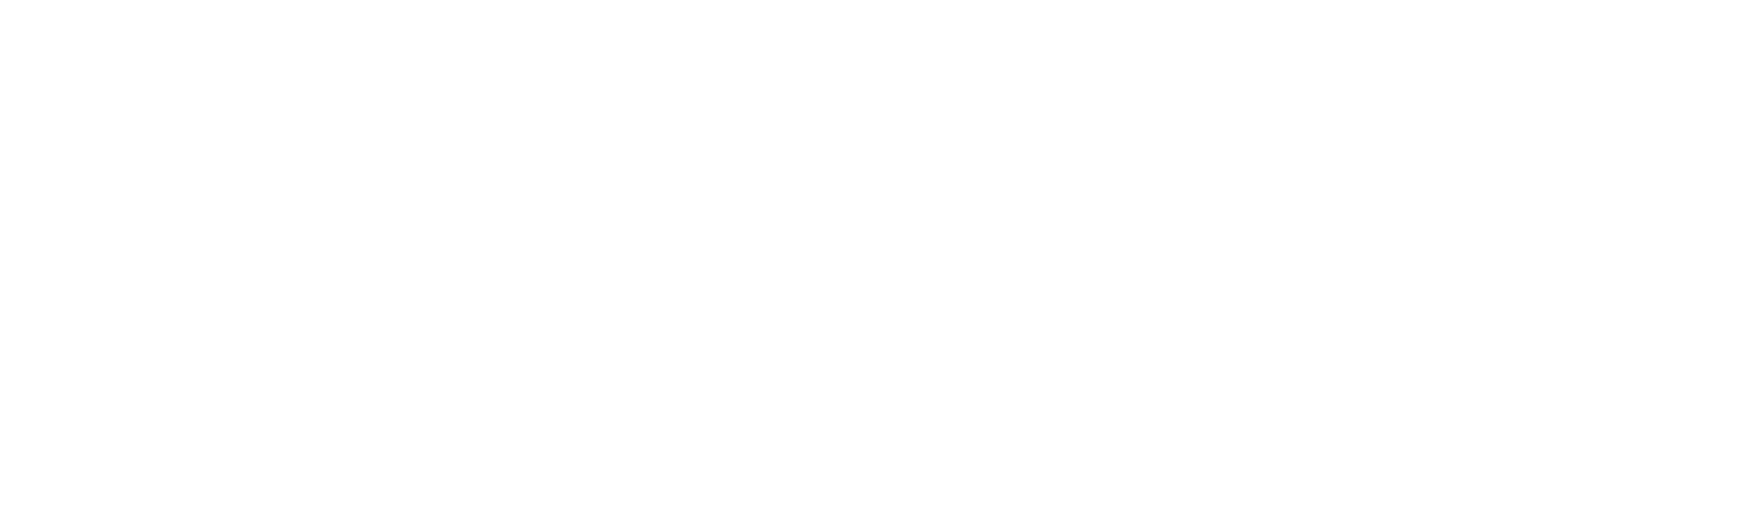 Startup Challenge